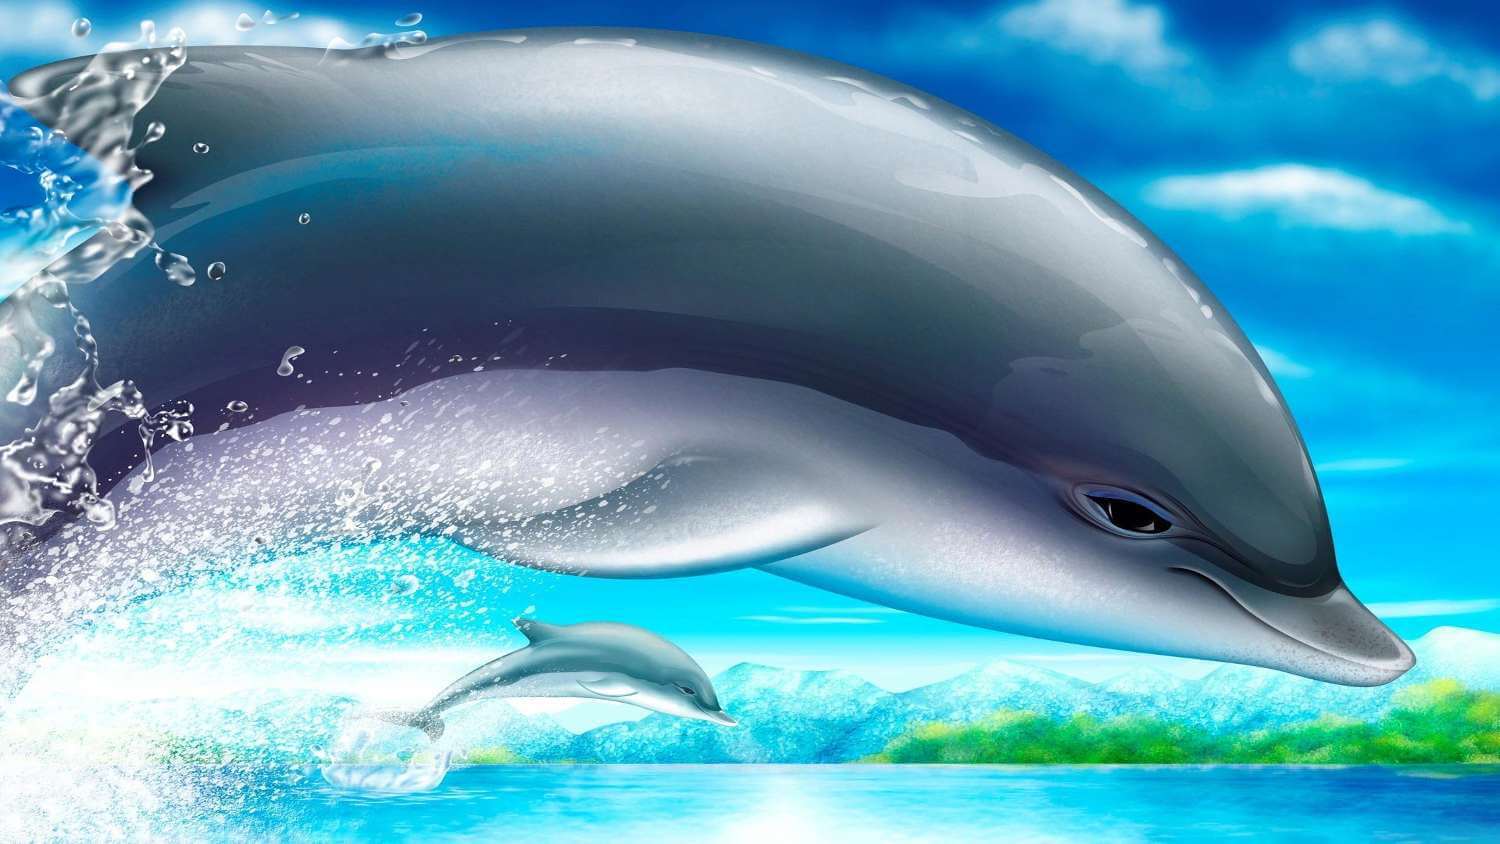 Дельфин убирает с экрана разноцветные шарики. Фото.